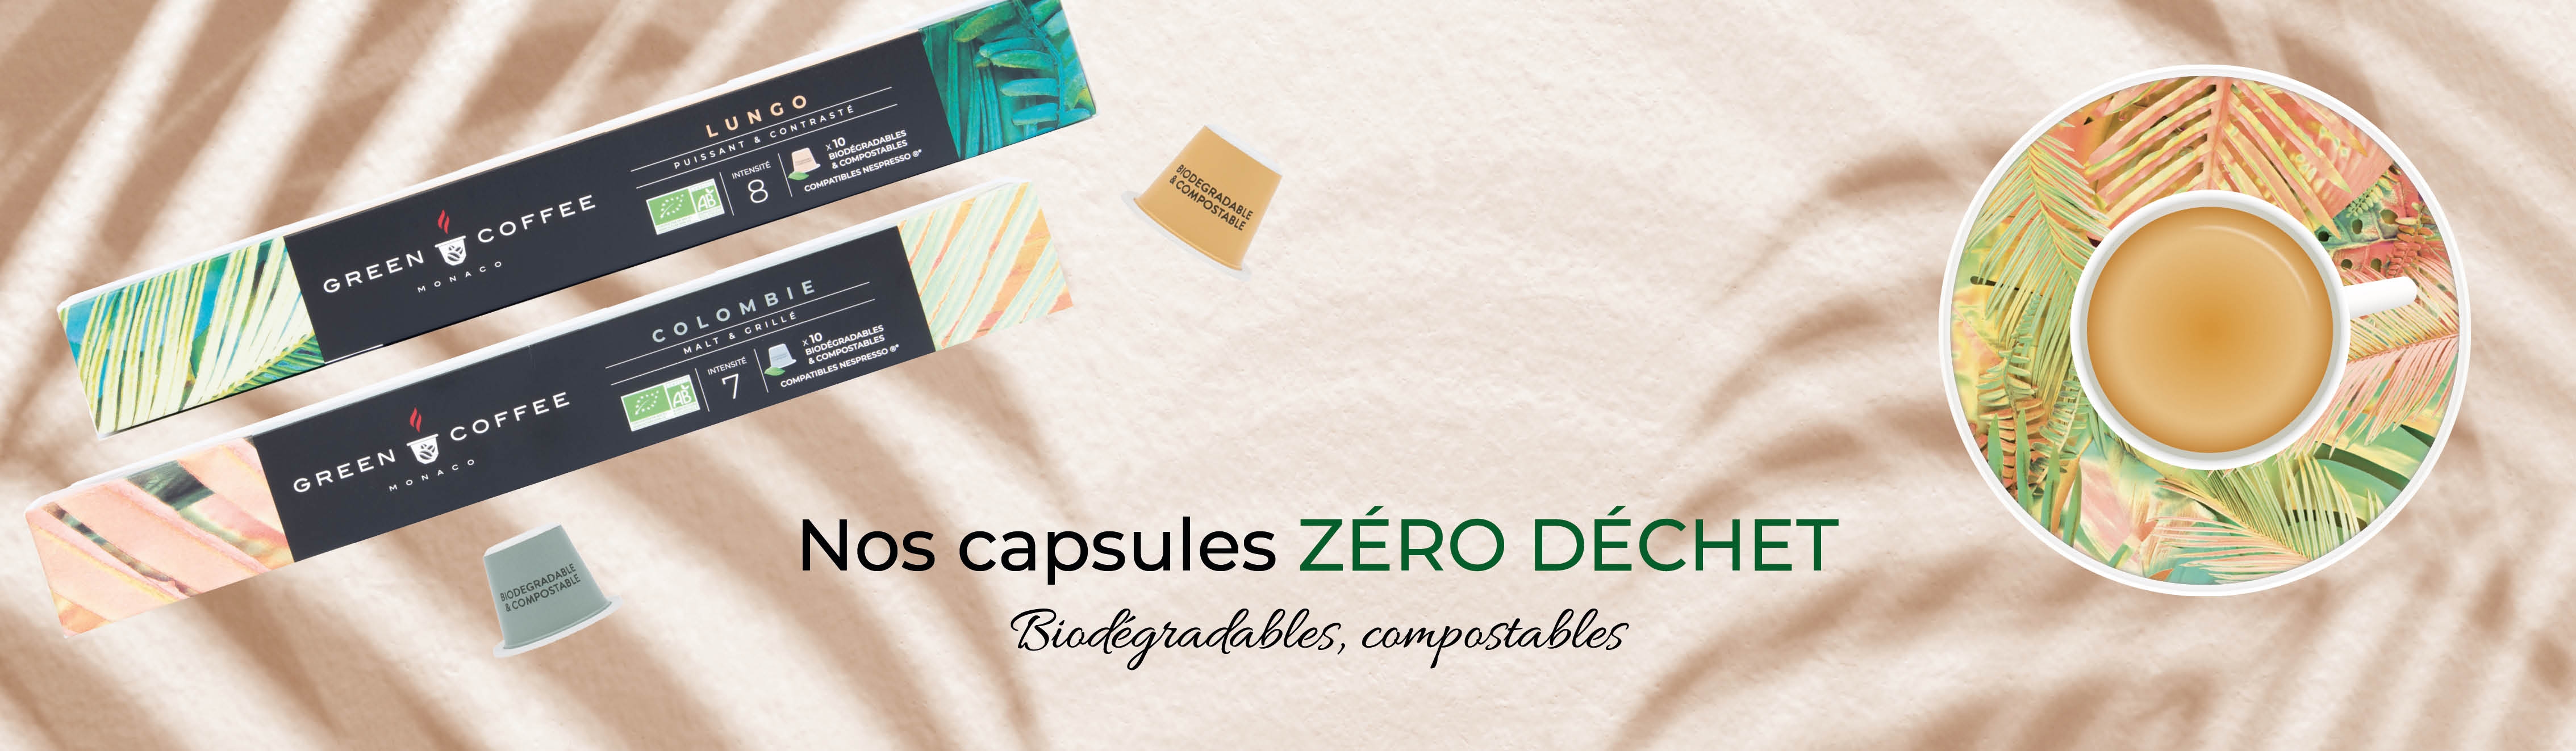 Café capsules biodegradables